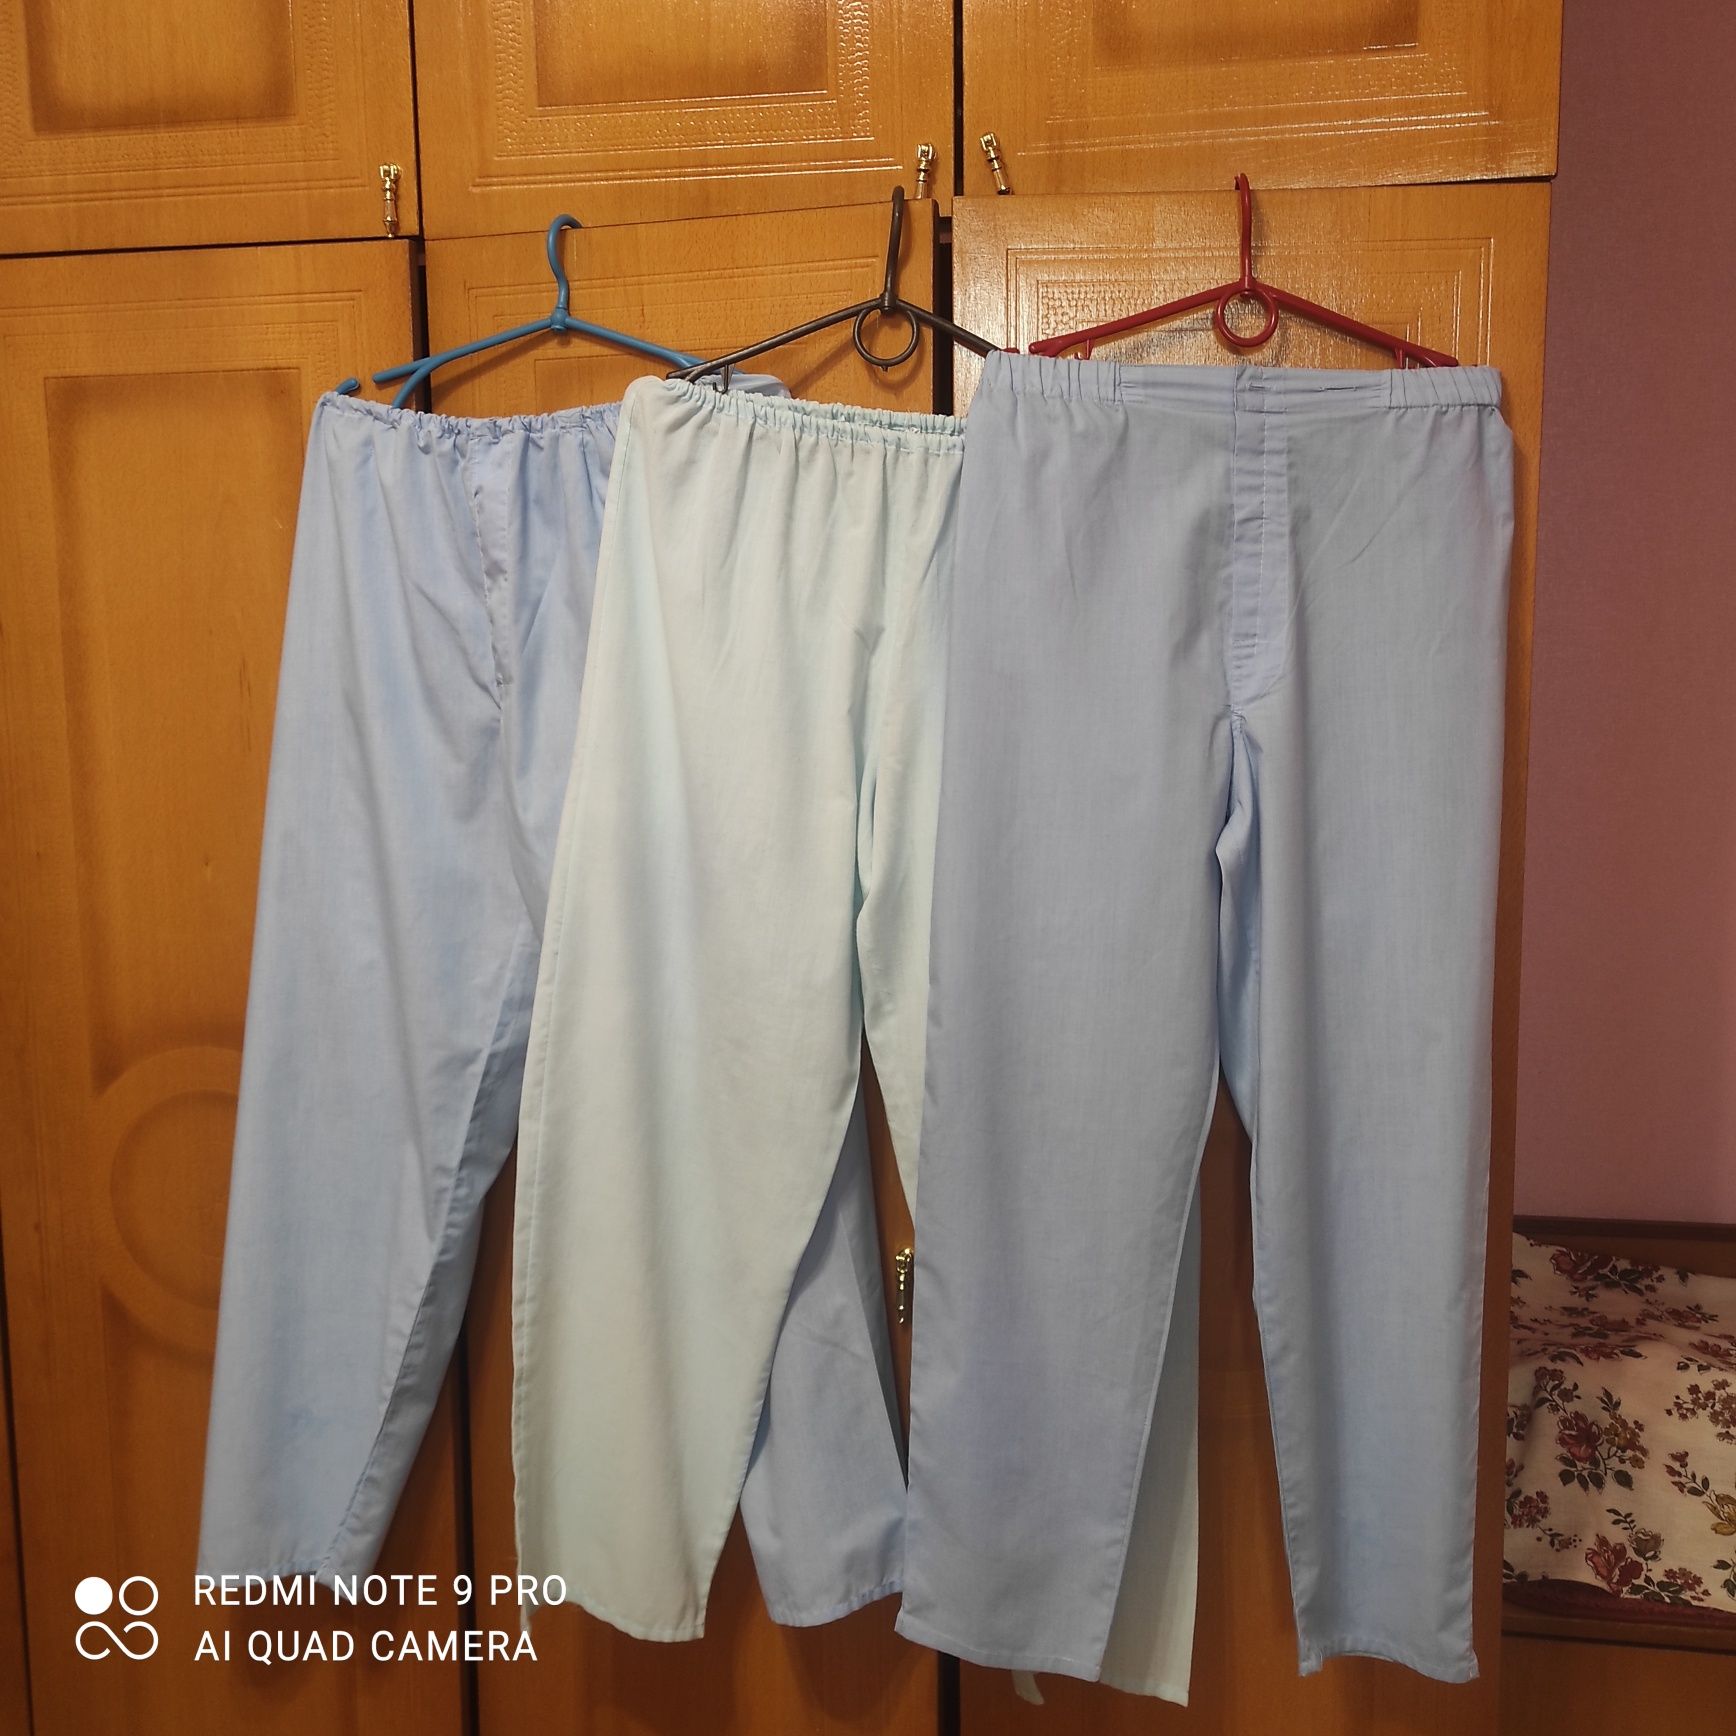 Медицинские брюки от костюмов, под халат,размер 46-50